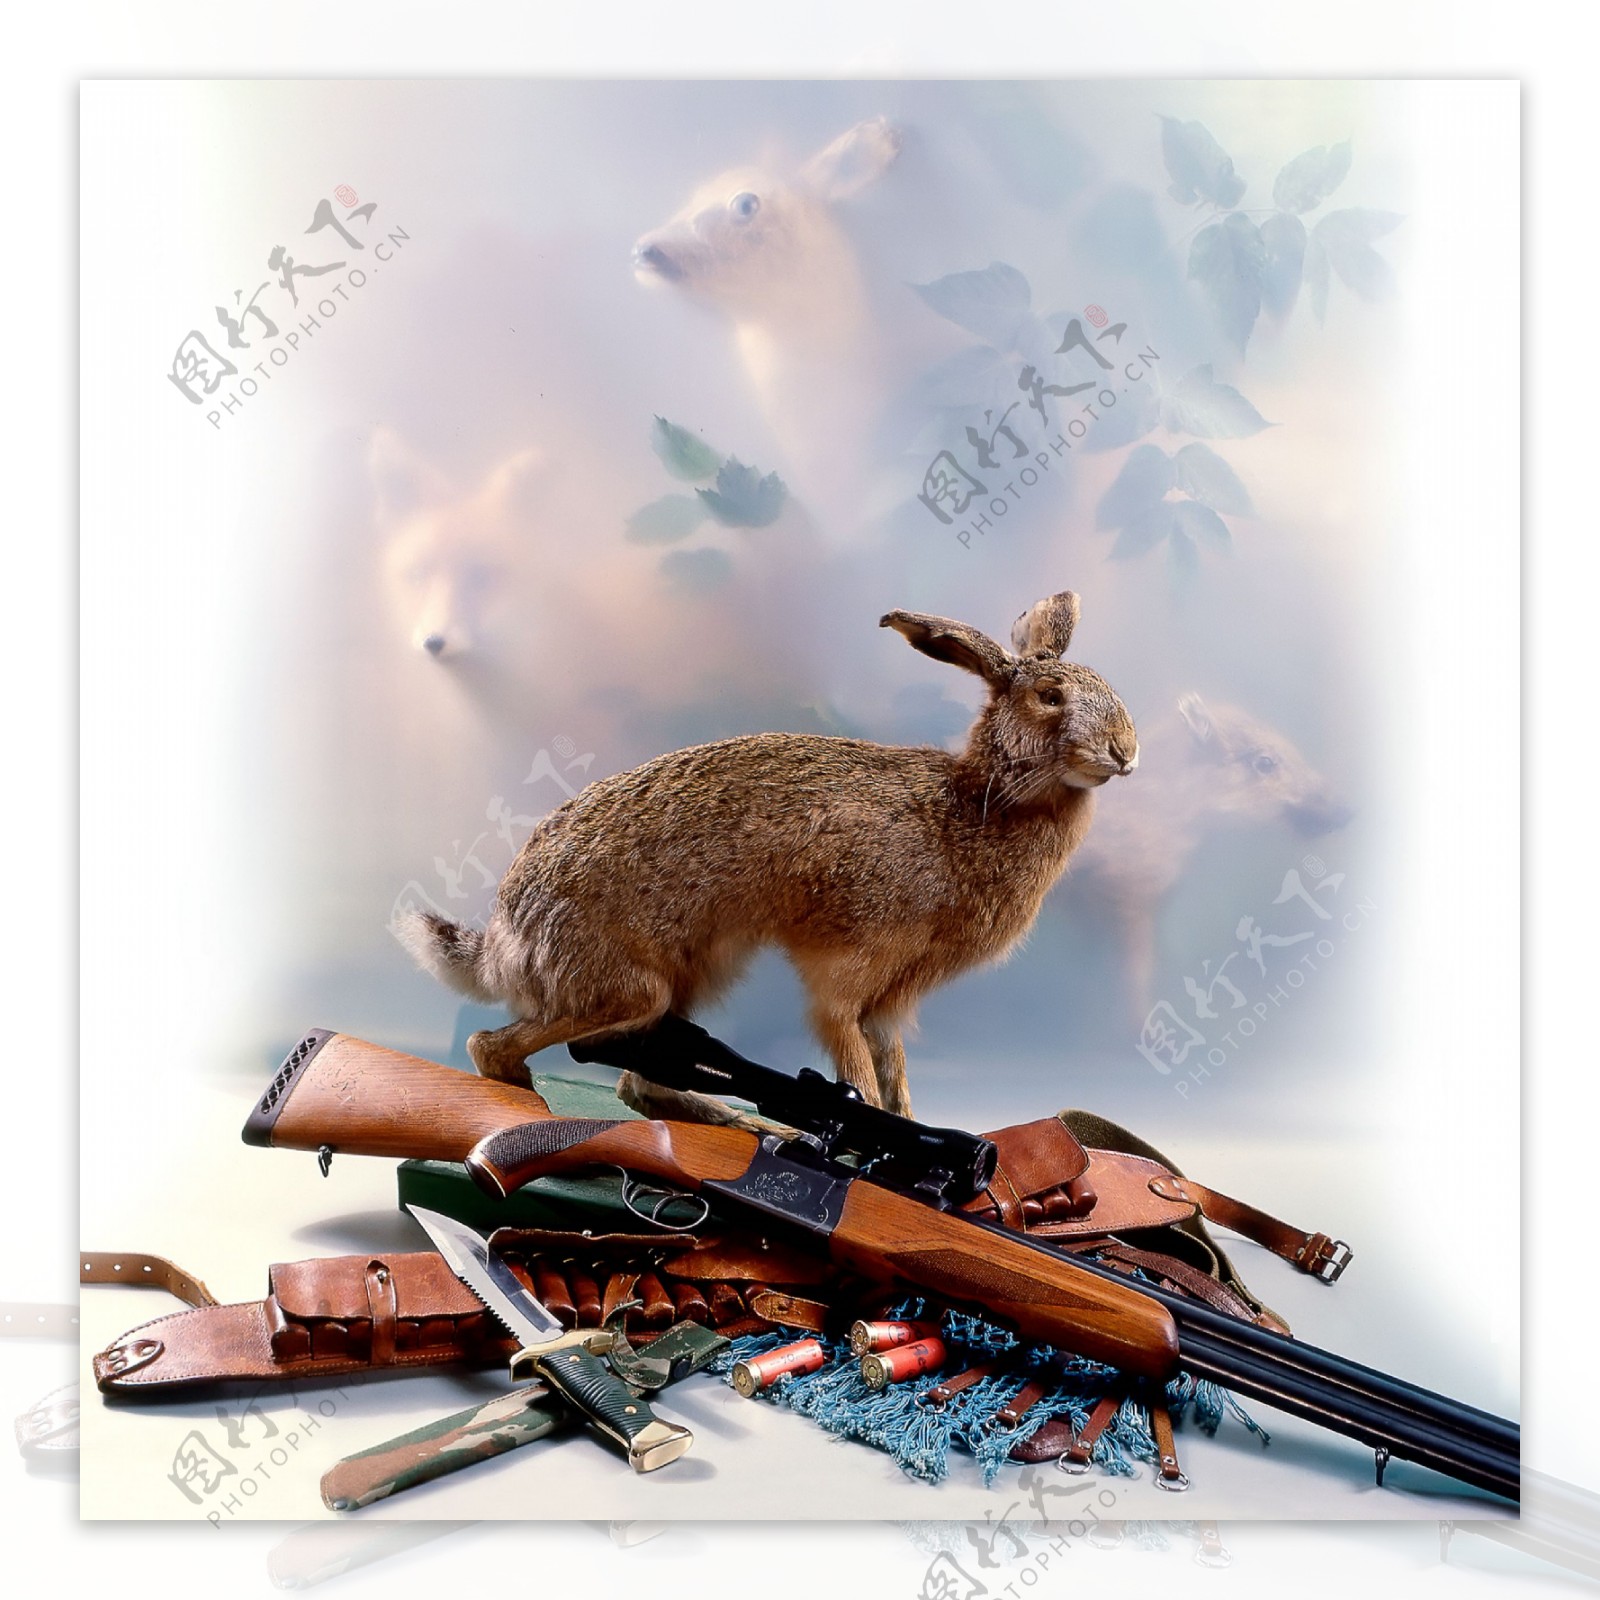 狩猎的工具与动物图片